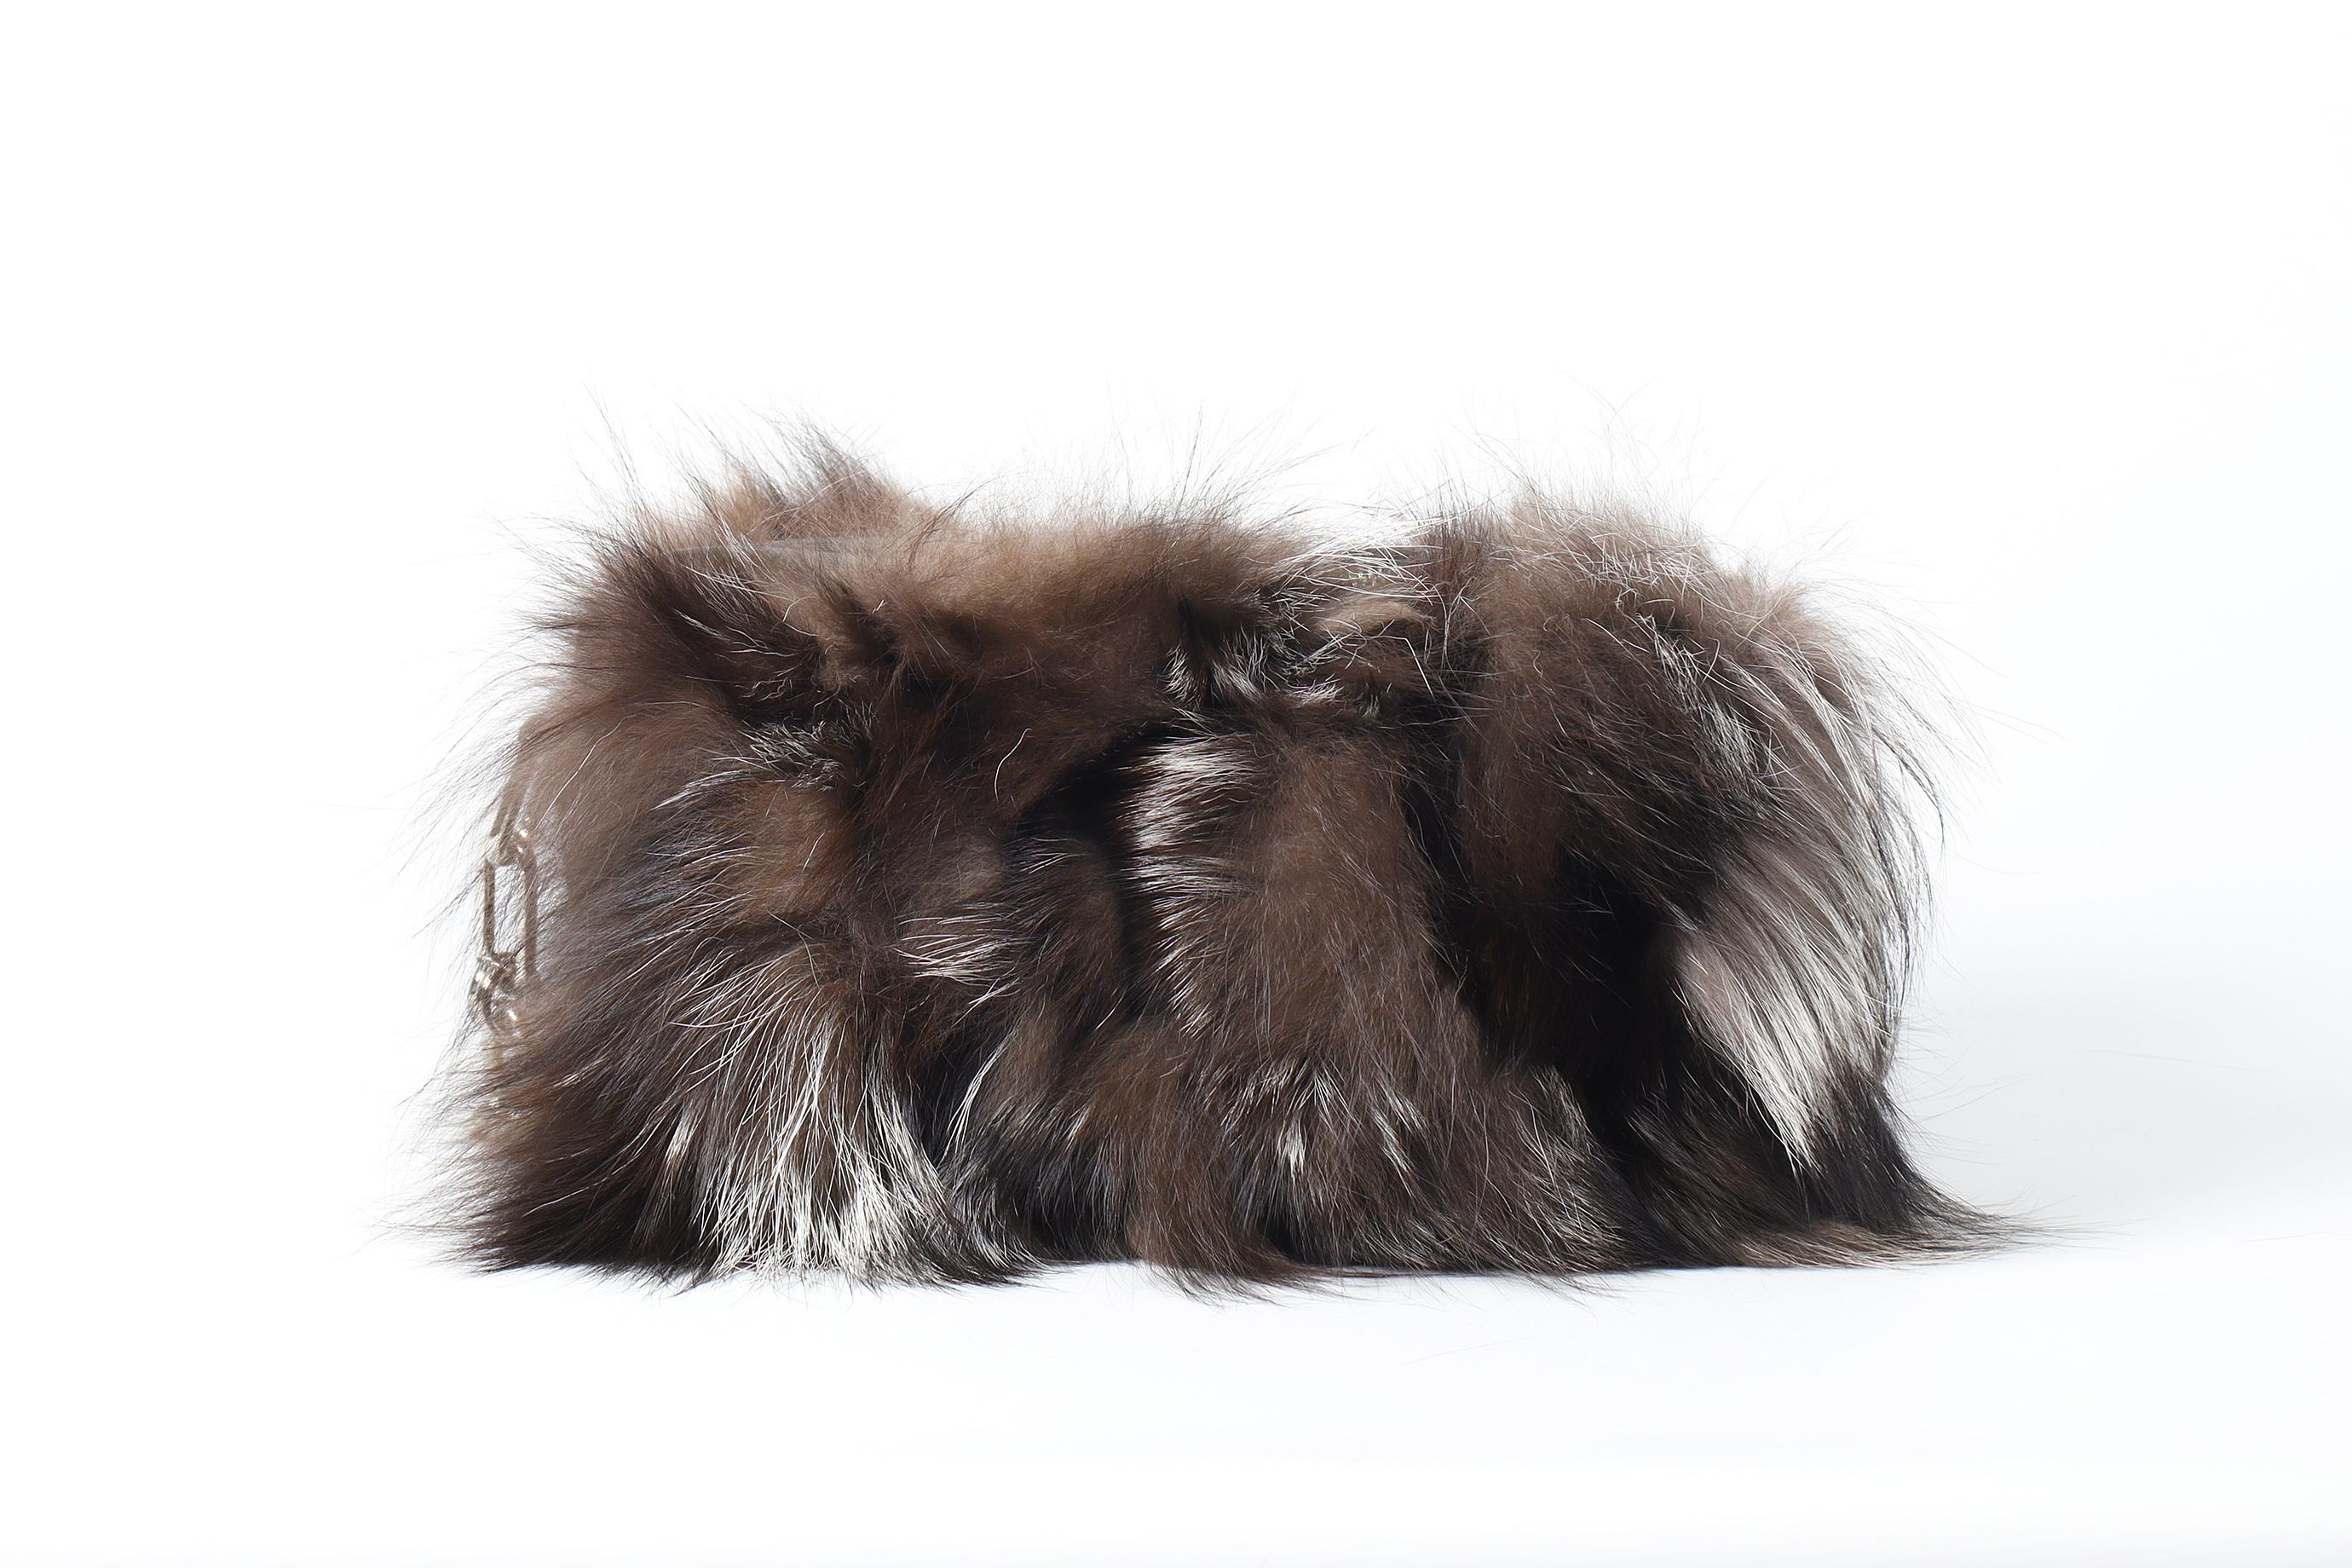 Michael Kors Collection Julie Lg Camera Fox Fur And Leather Shoulder Bag For Sale 1